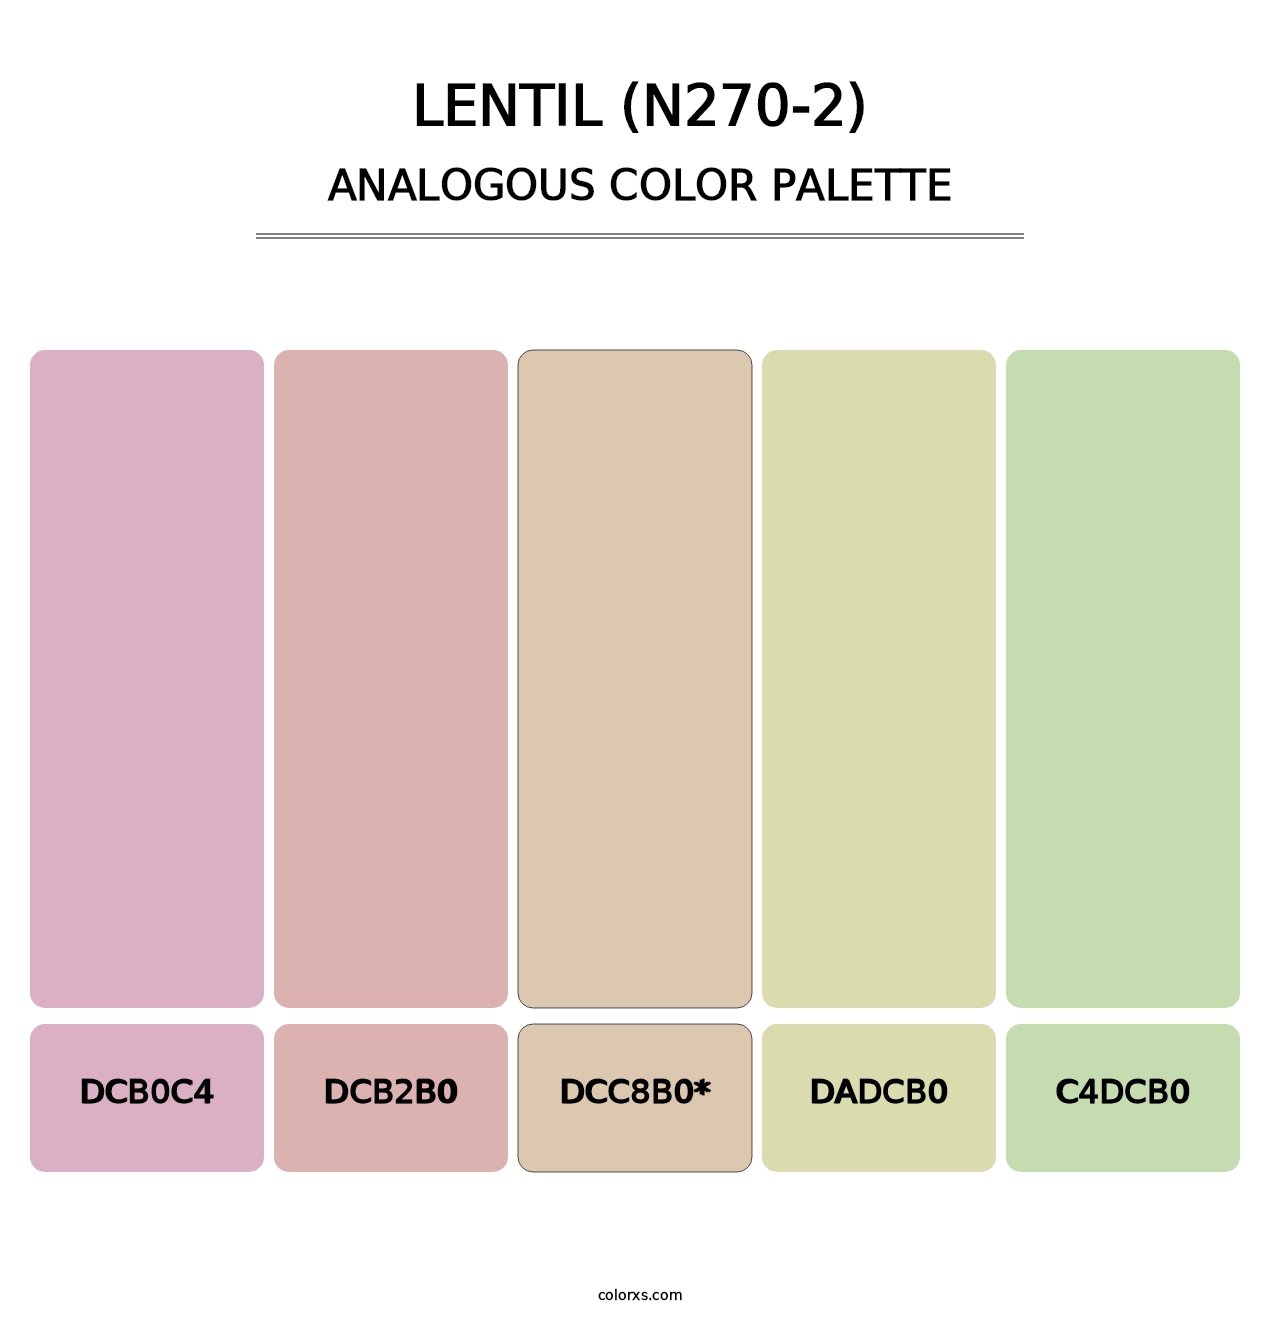 Lentil (N270-2) - Analogous Color Palette